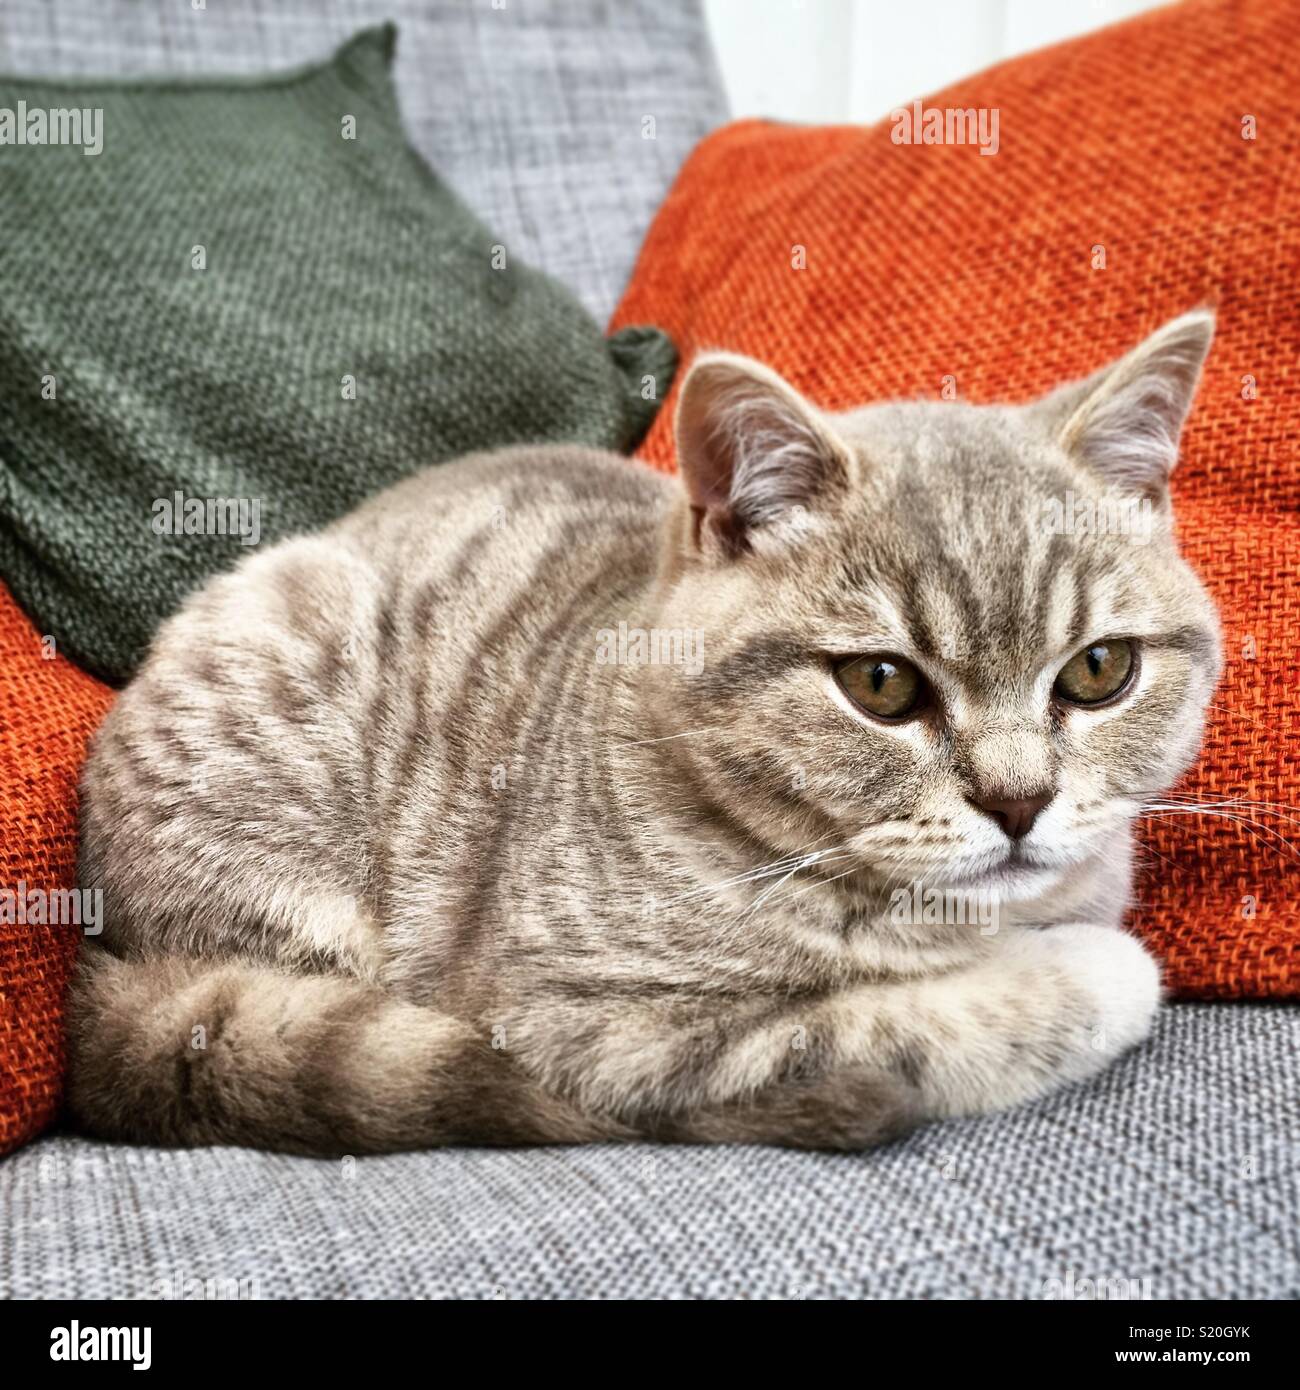 Lilas et gris en peluche spotted tabby British Shorthair chaton blotti sur une chaise avec coussins orange et vert. Banque D'Images